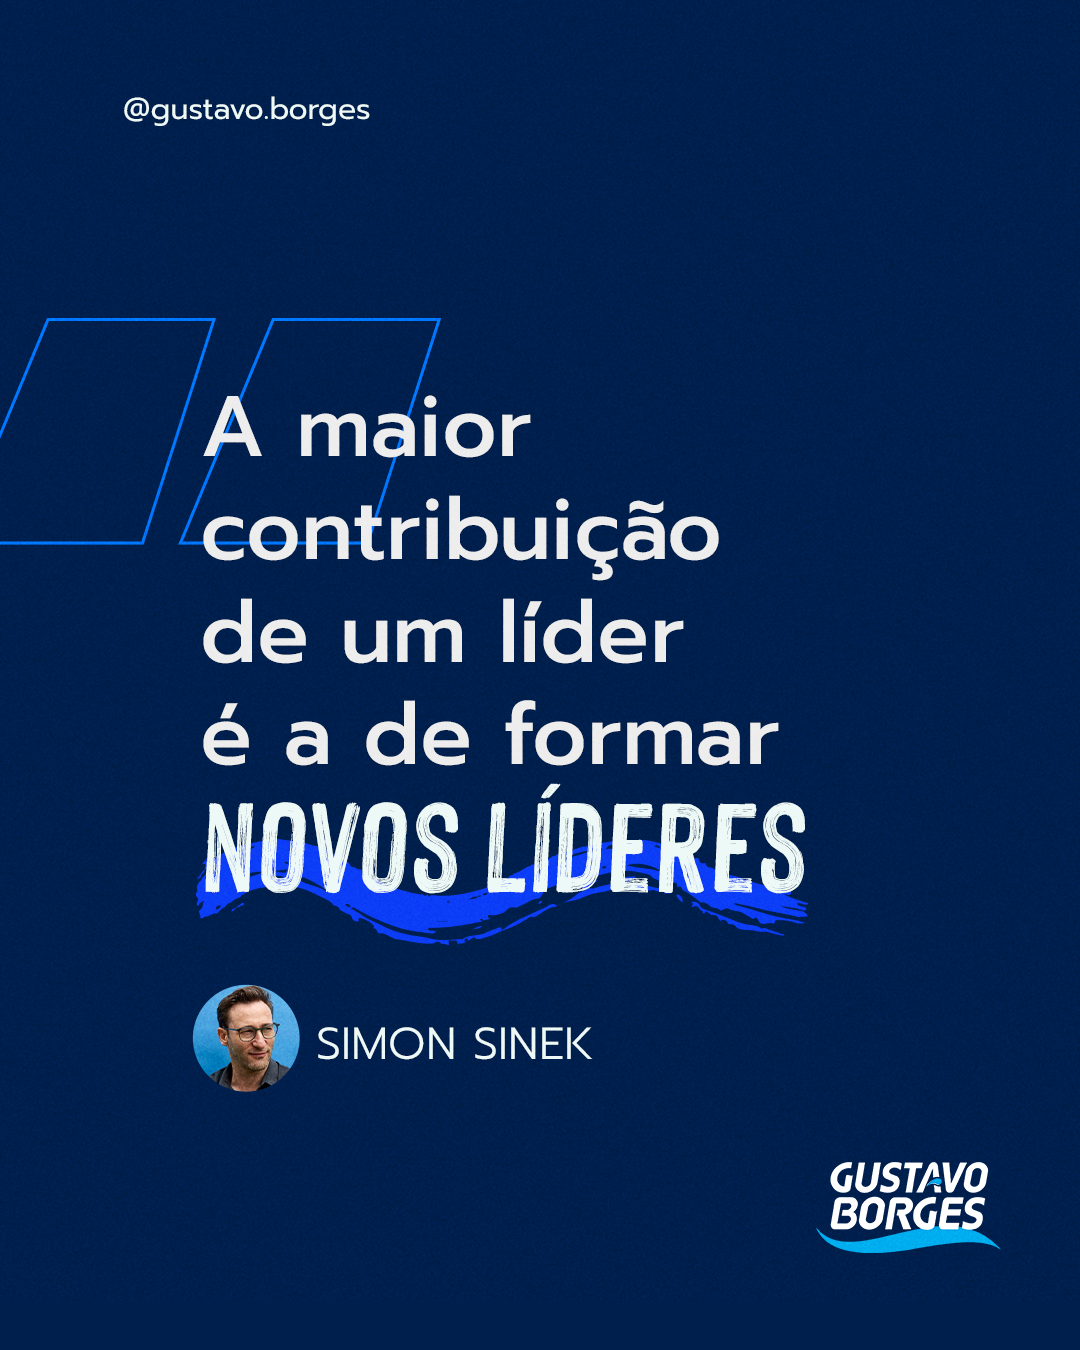 Frase de Simon Sinek: "A maior contribuição de um líder é a de formar novos líderes."